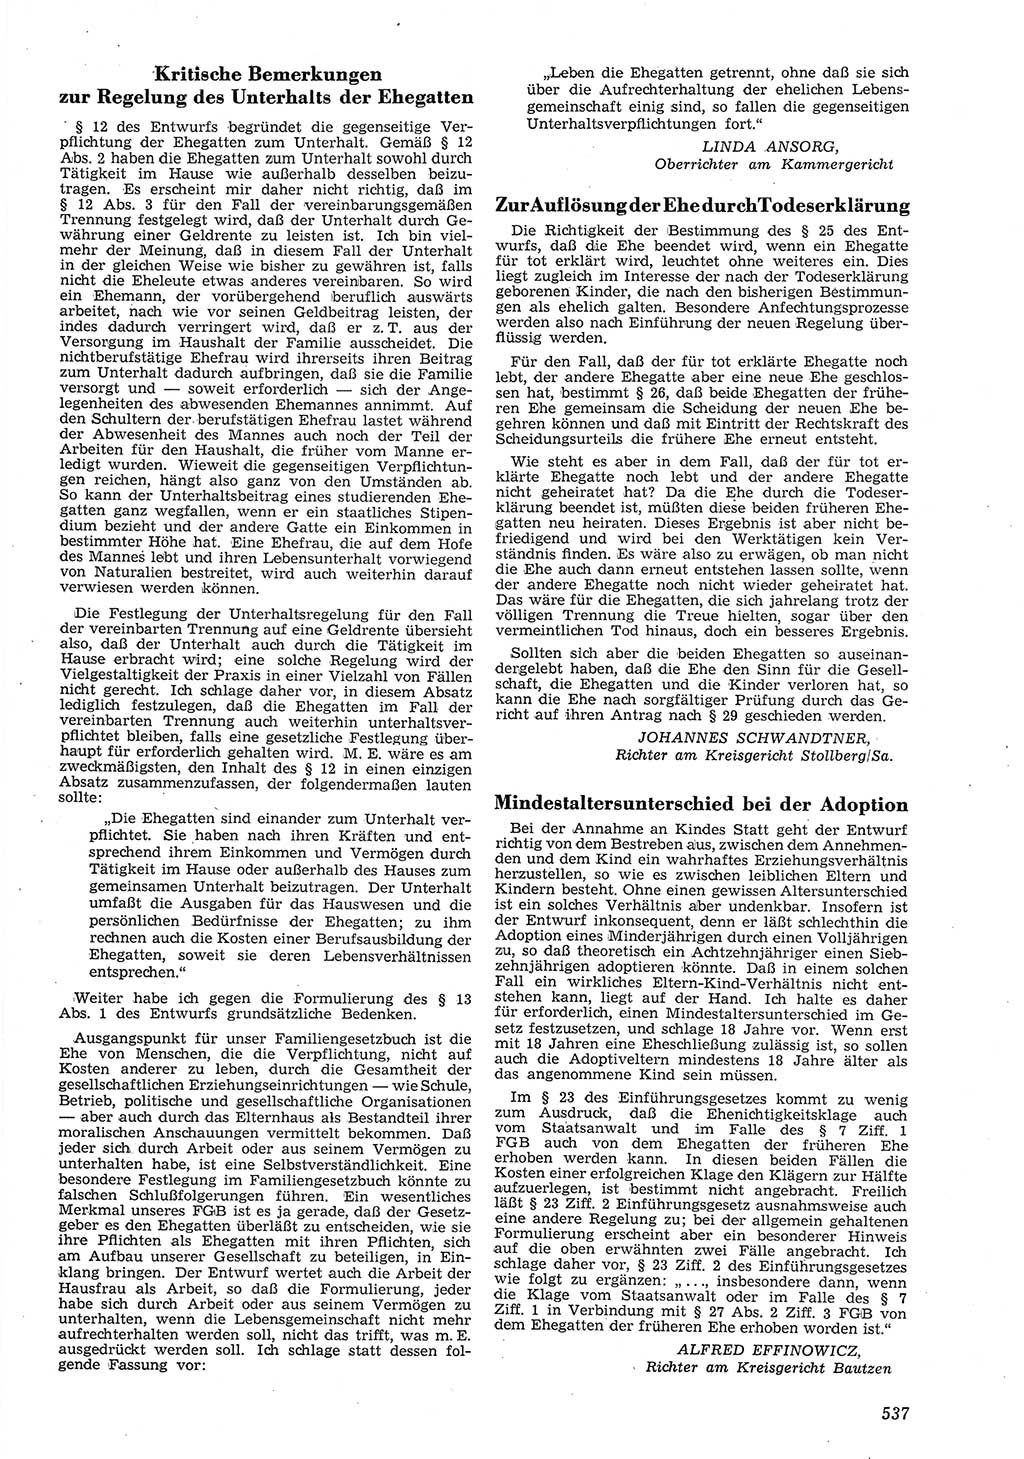 Neue Justiz (NJ), Zeitschrift für Recht und Rechtswissenschaft [Deutsche Demokratische Republik (DDR)], 8. Jahrgang 1954, Seite 537 (NJ DDR 1954, S. 537)